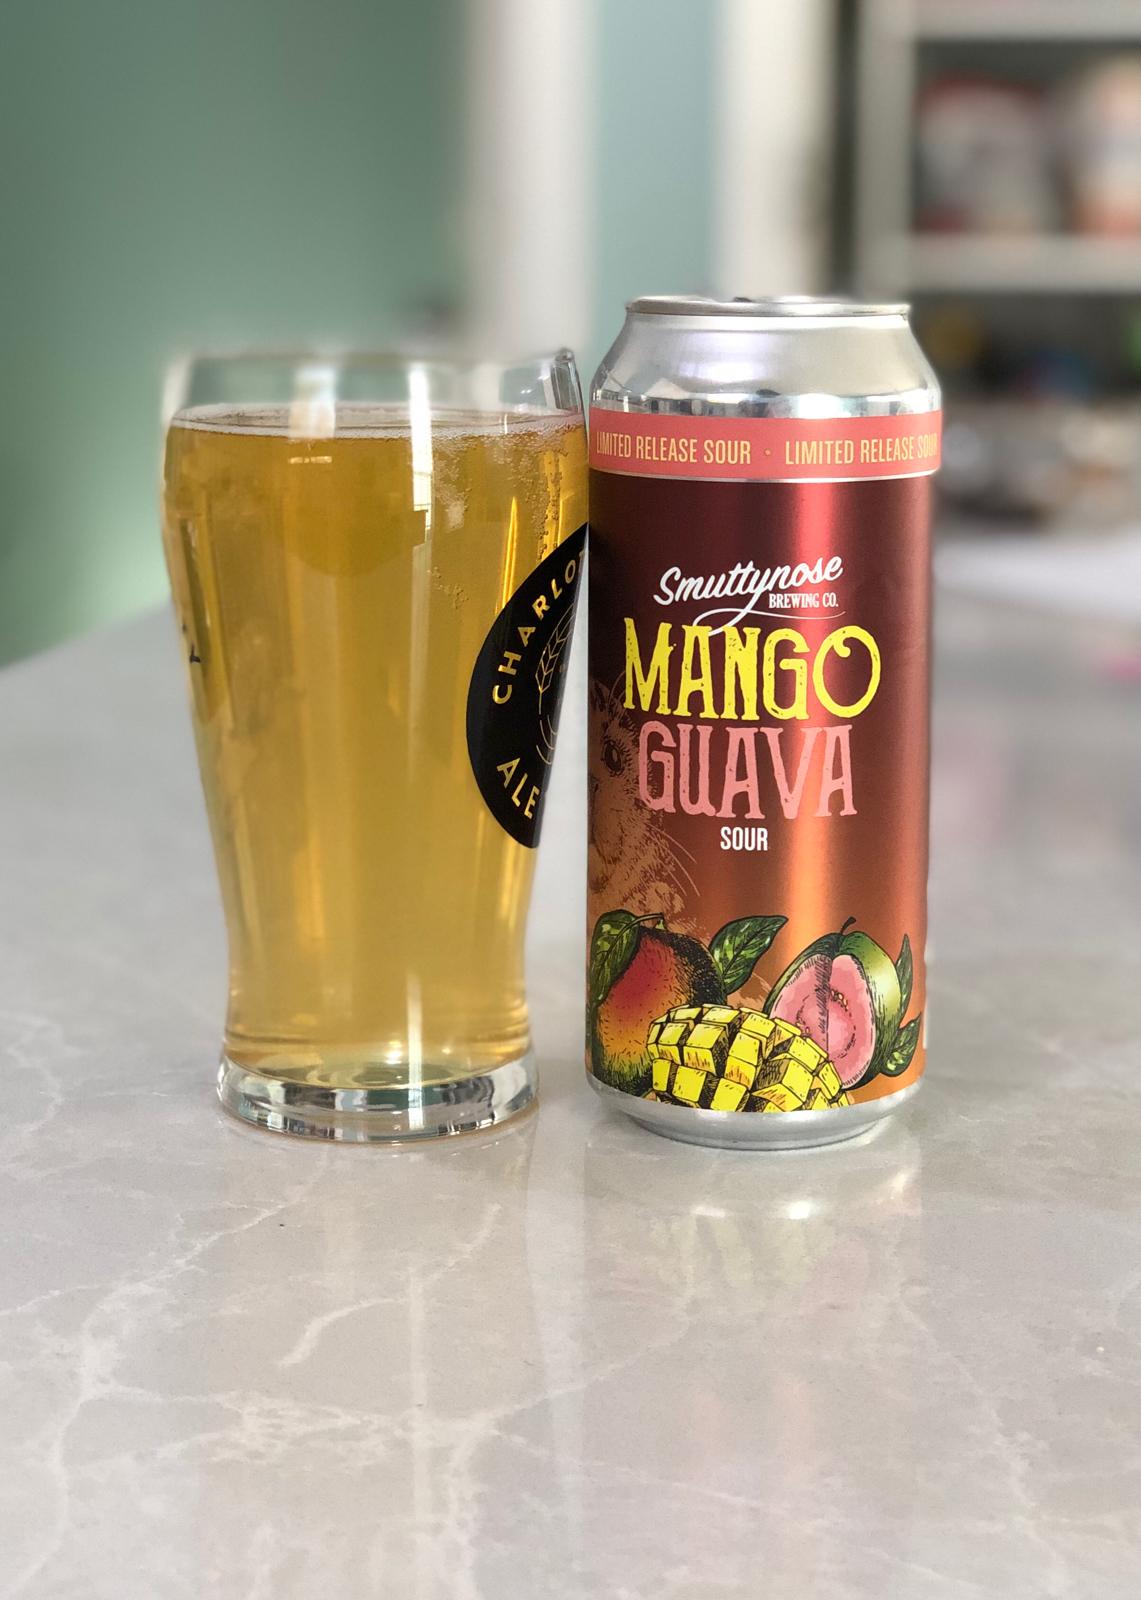 Mango Guava Sour